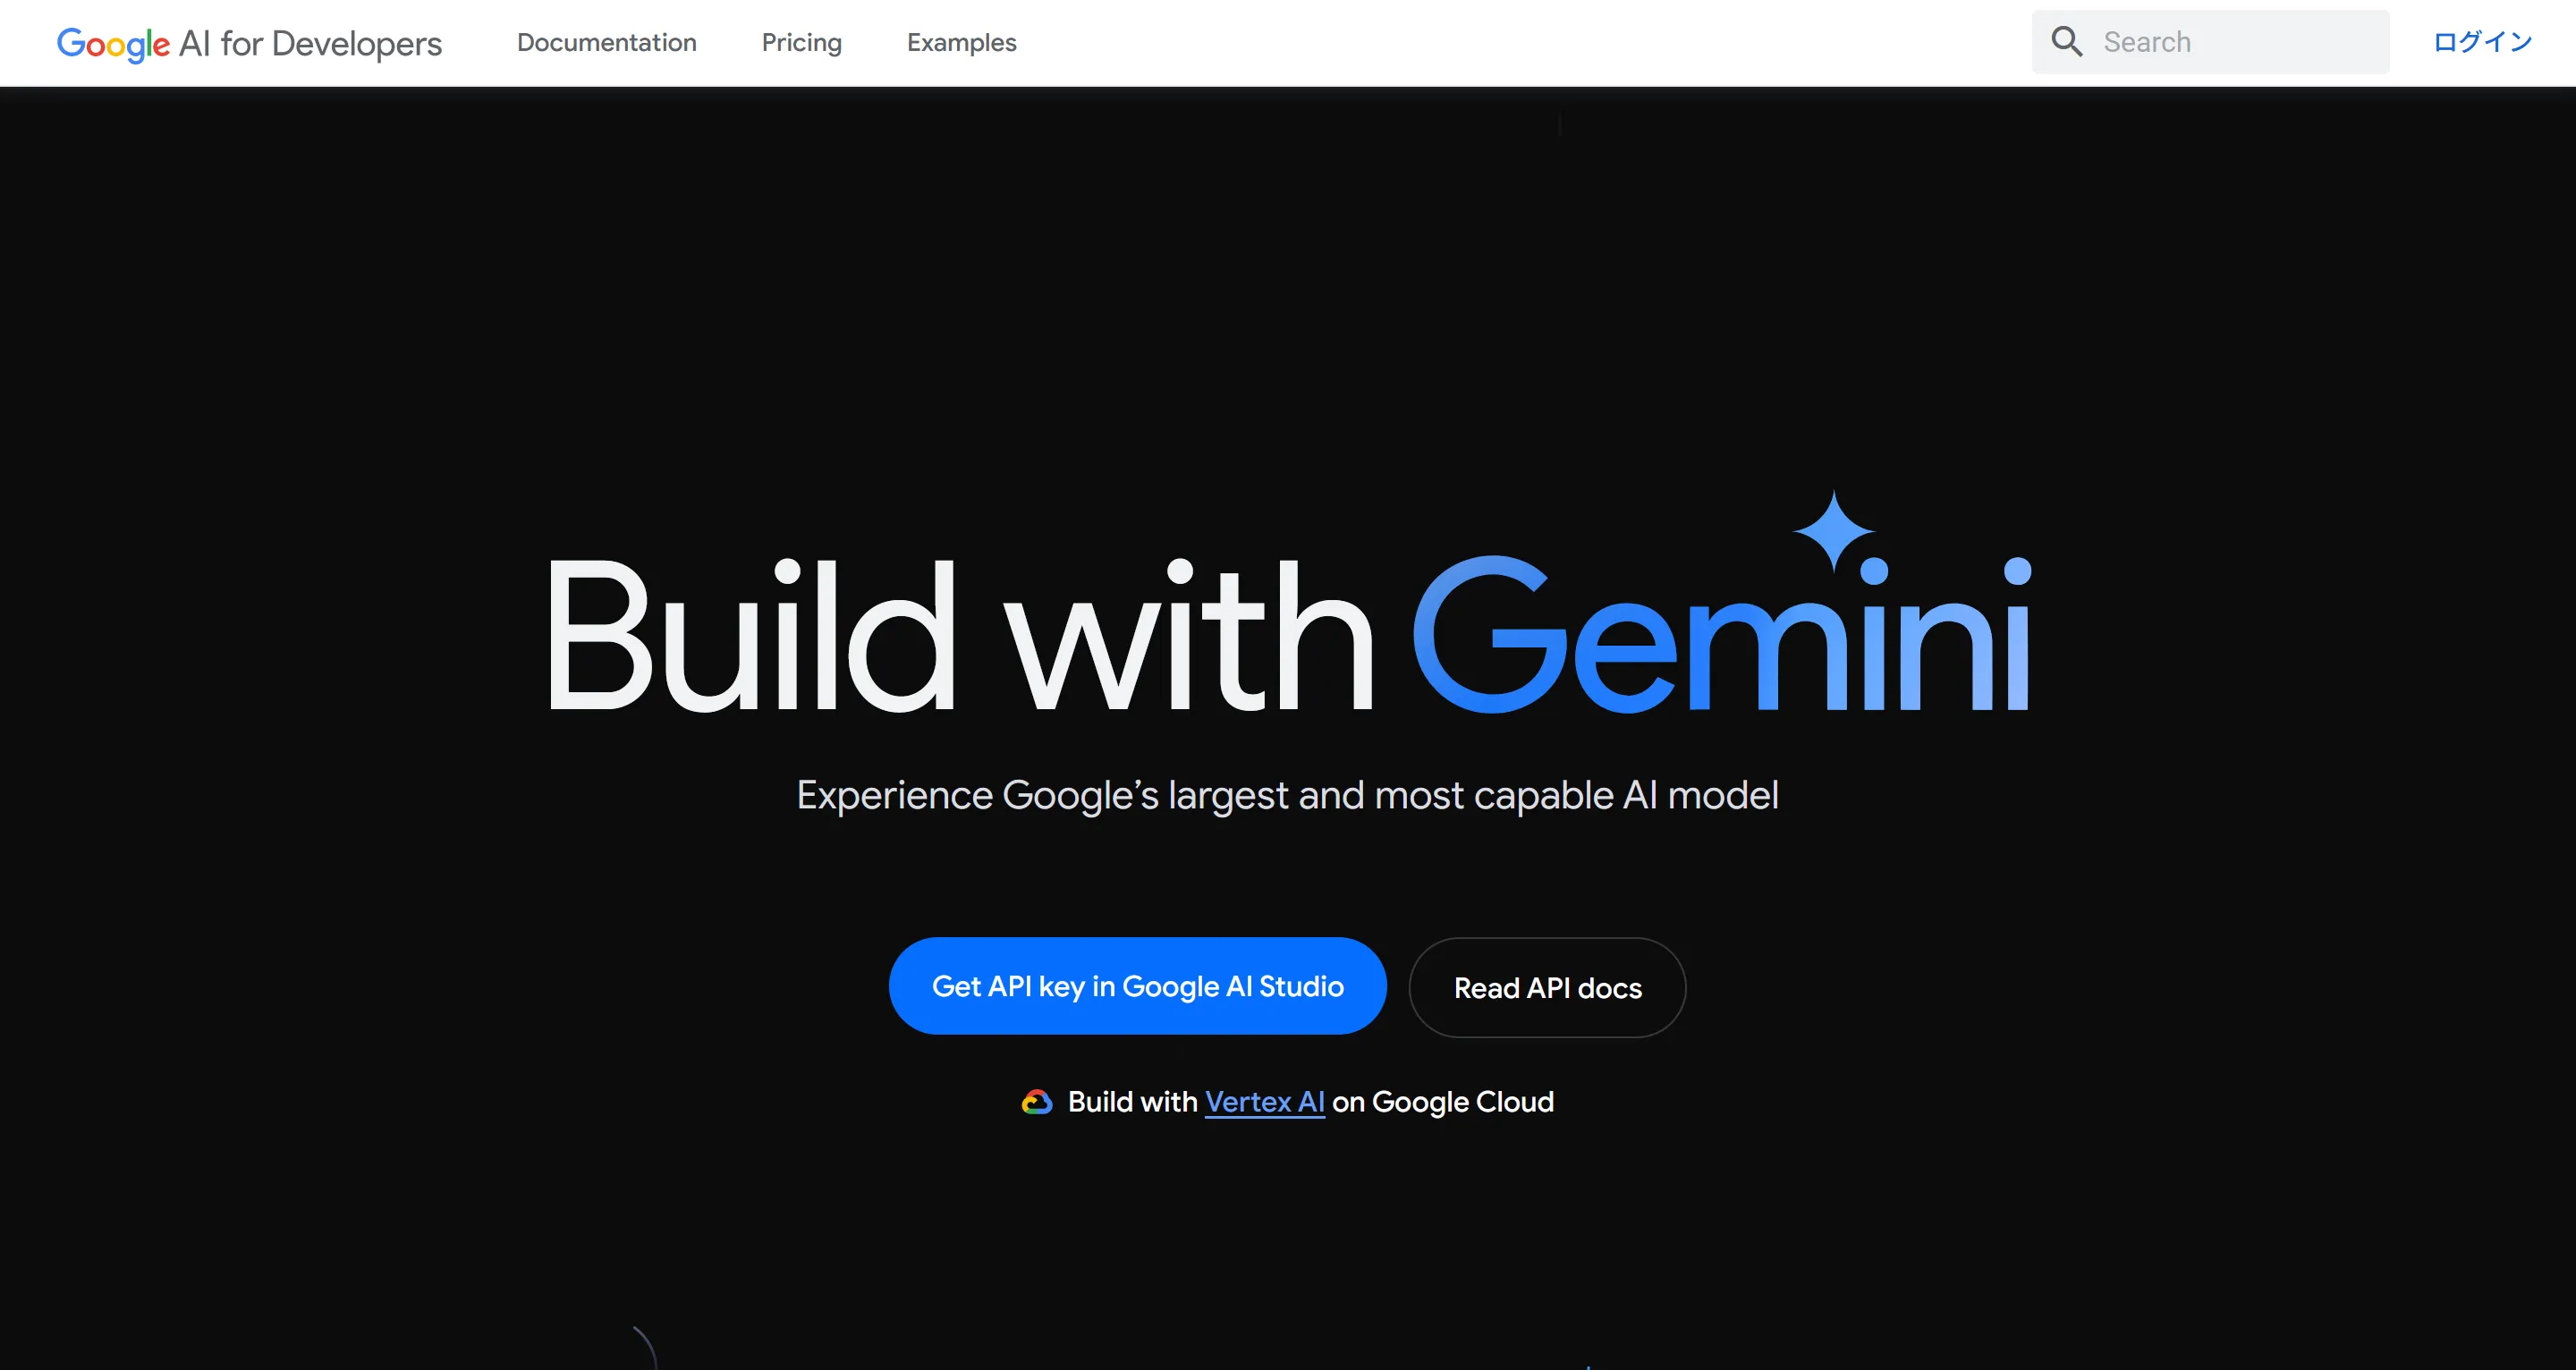 Geminiの公式サイトのスクリーンショット。中央に大きく「Build with Gemini」と書かれている